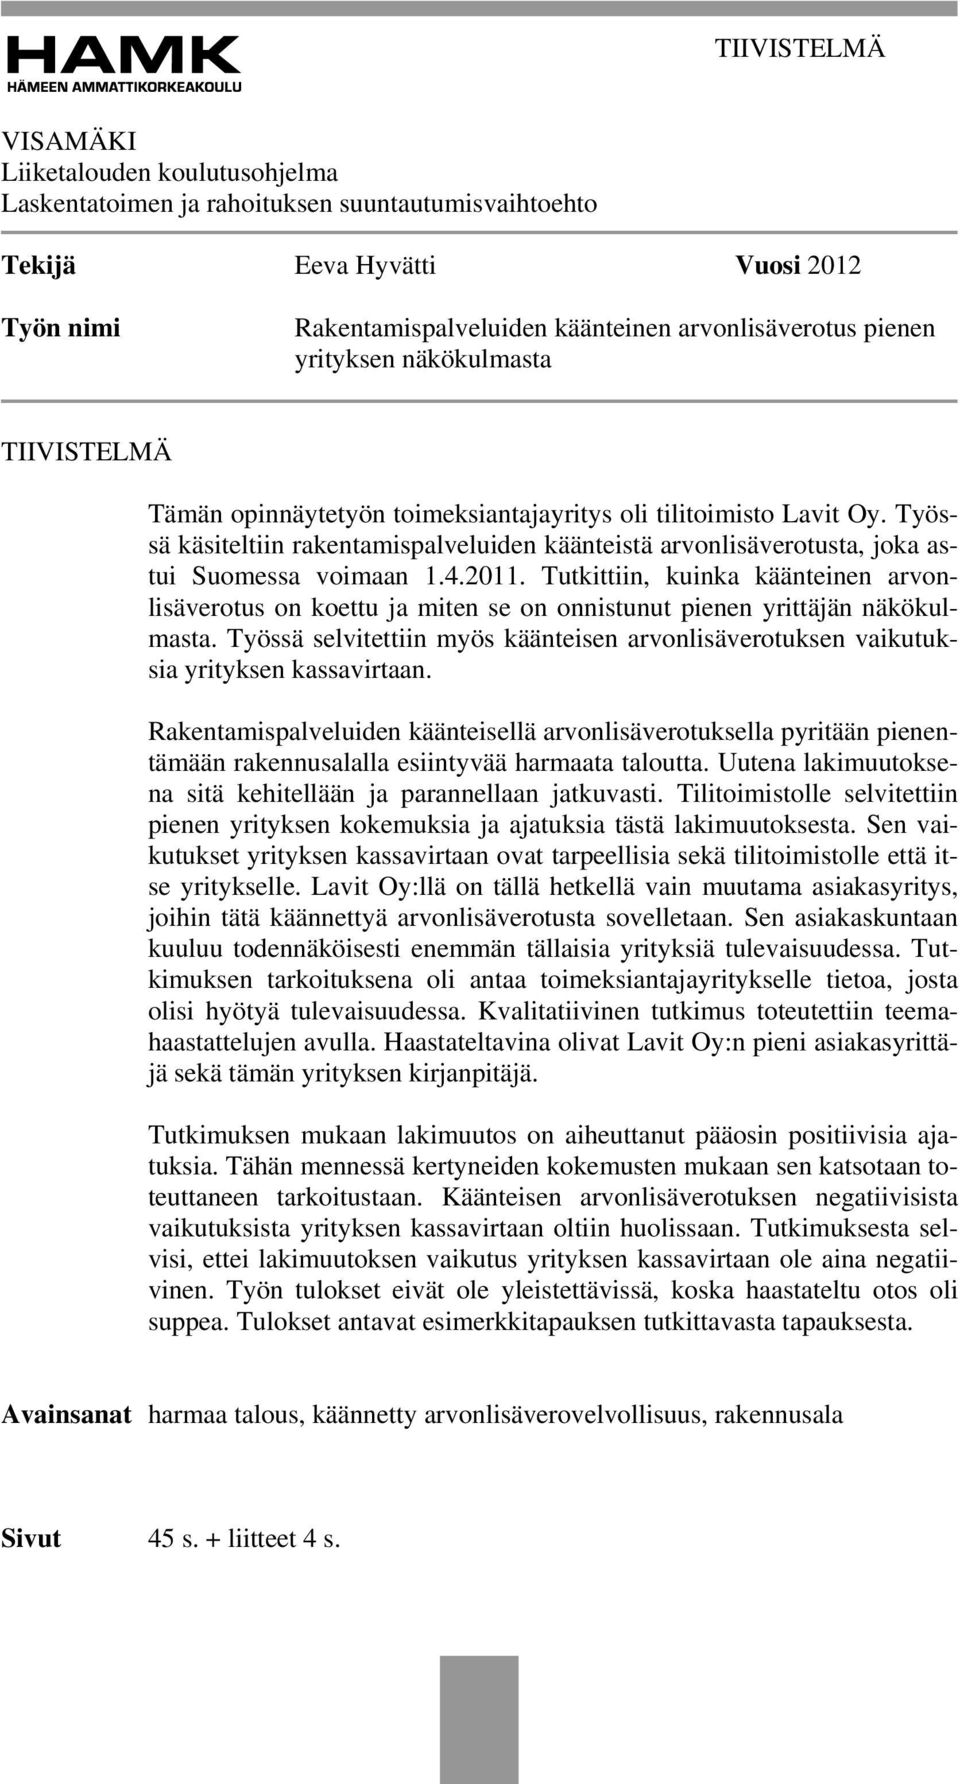 Työssä käsiteltiin rakentamispalveluiden käänteistä arvonlisäverotusta, joka astui Suomessa voimaan 1.4.2011.